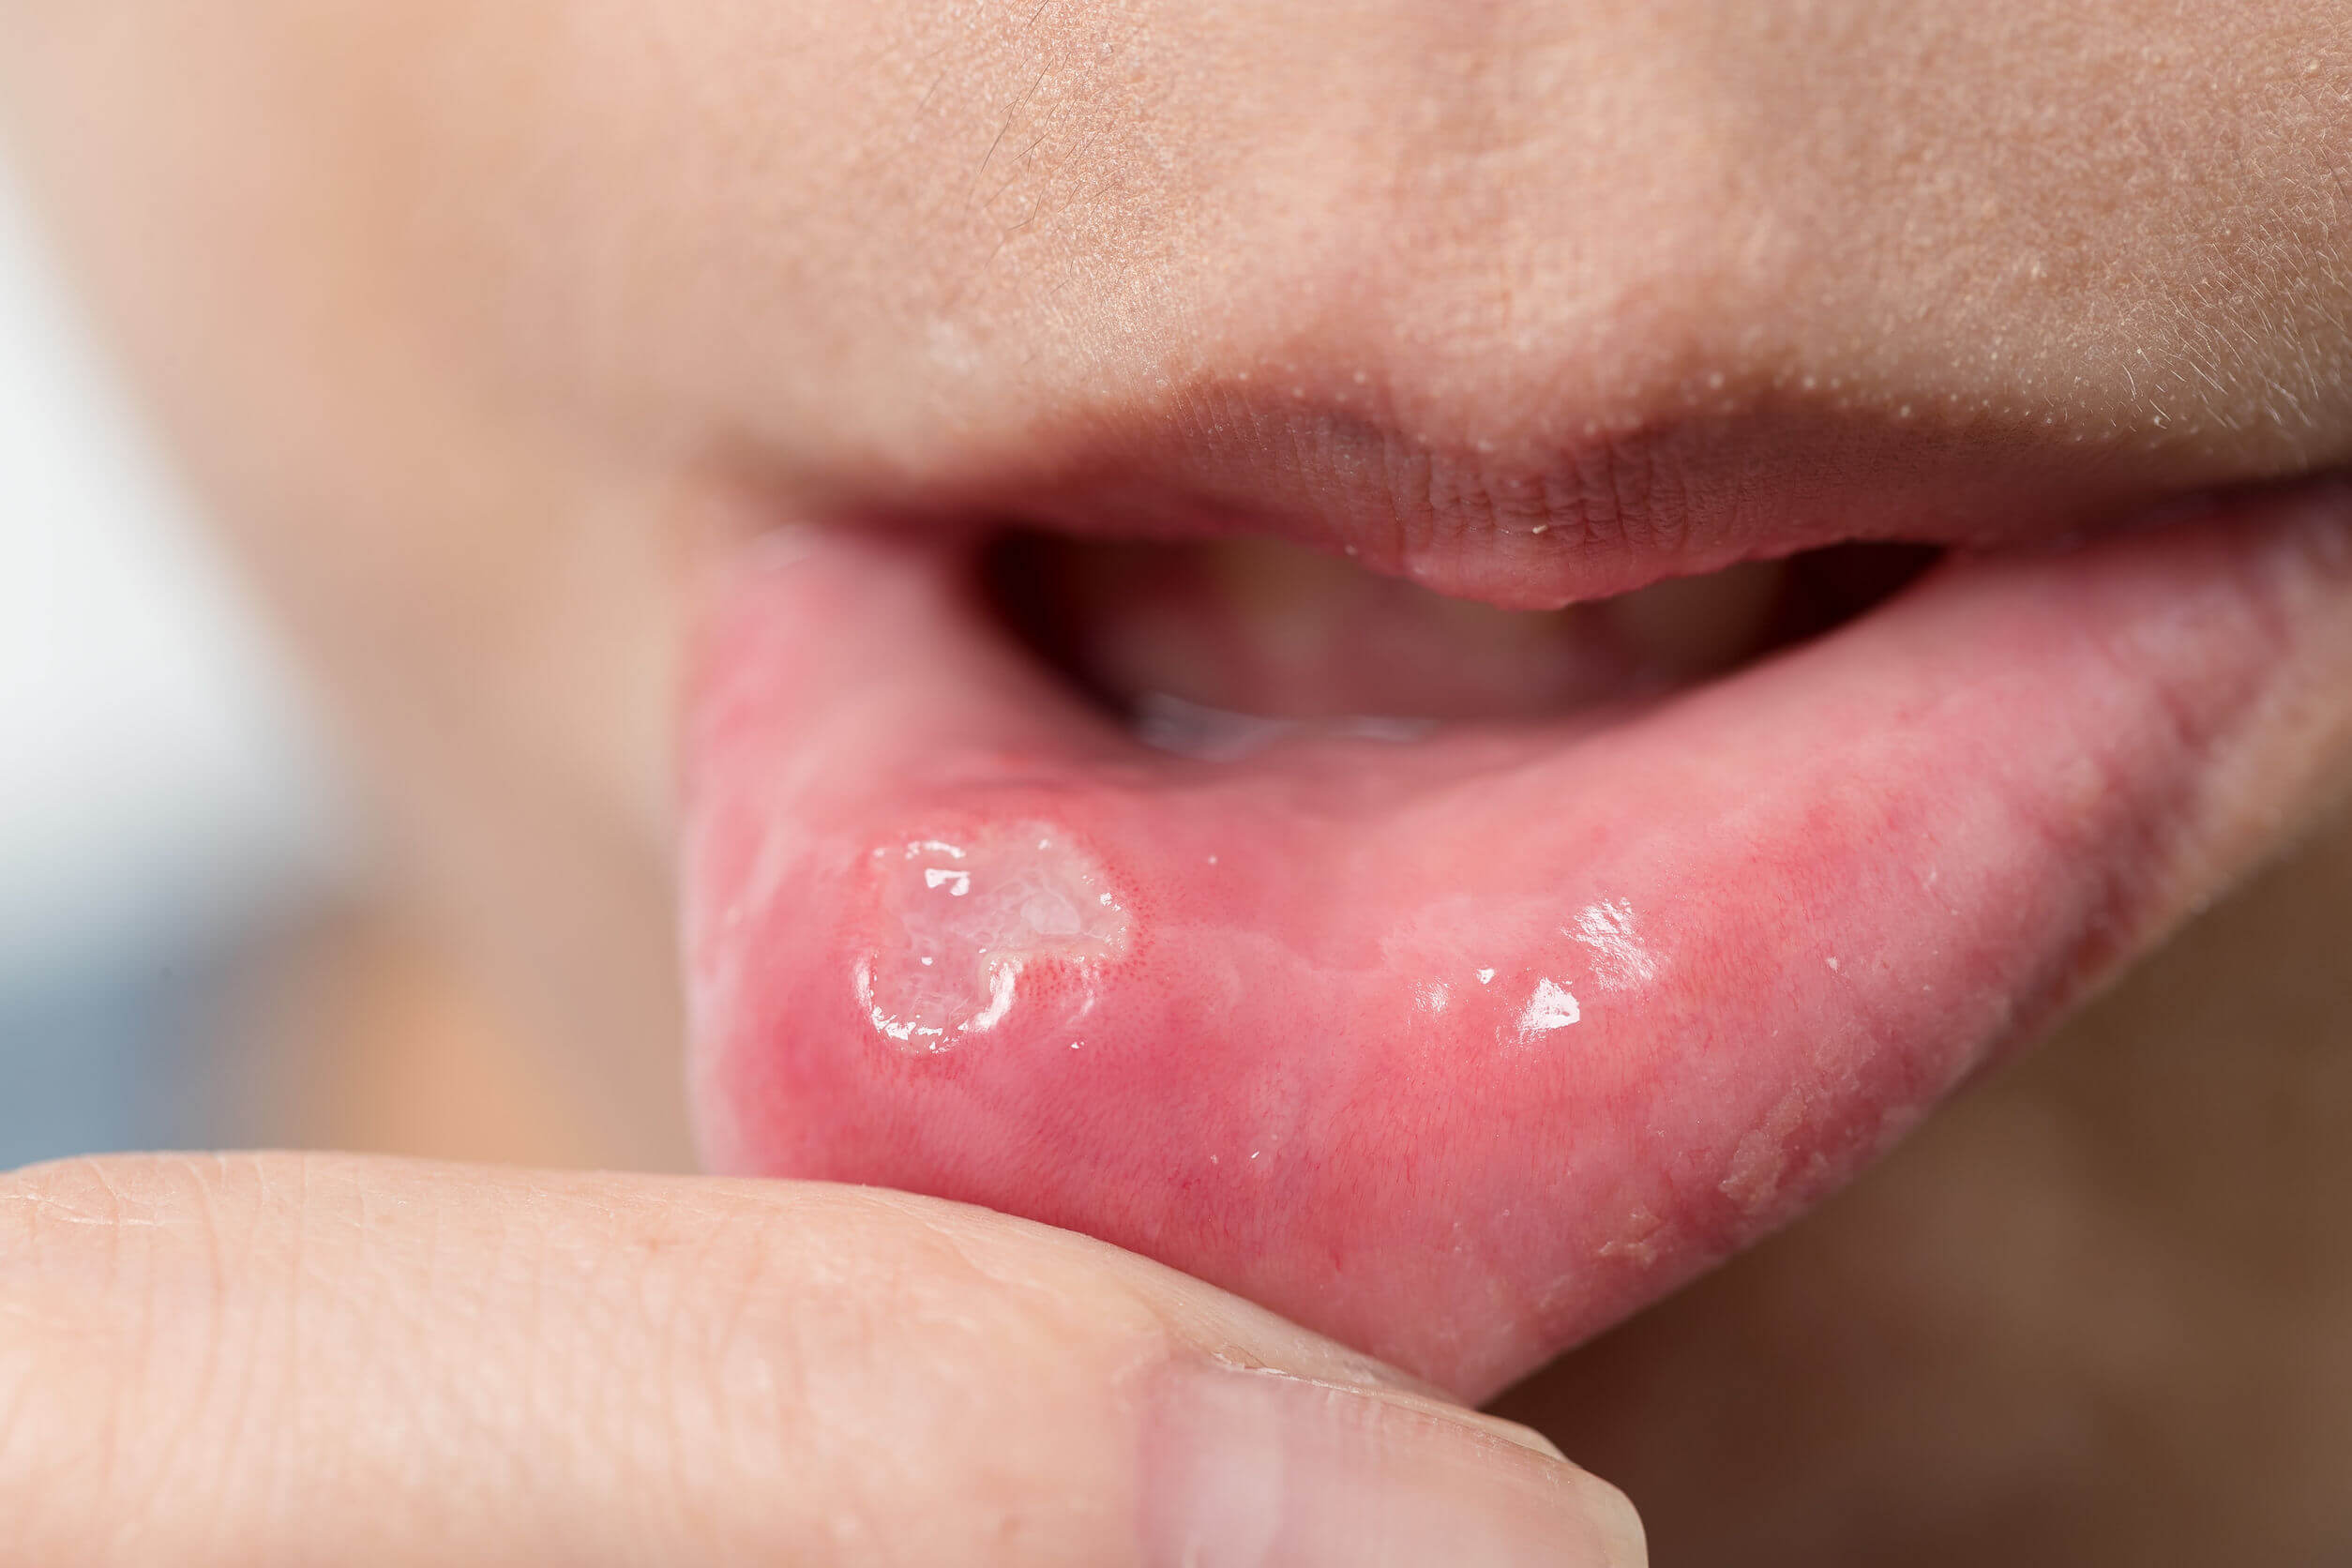 Cómo curar aftas y llagas en boca? - Mejor con Salud